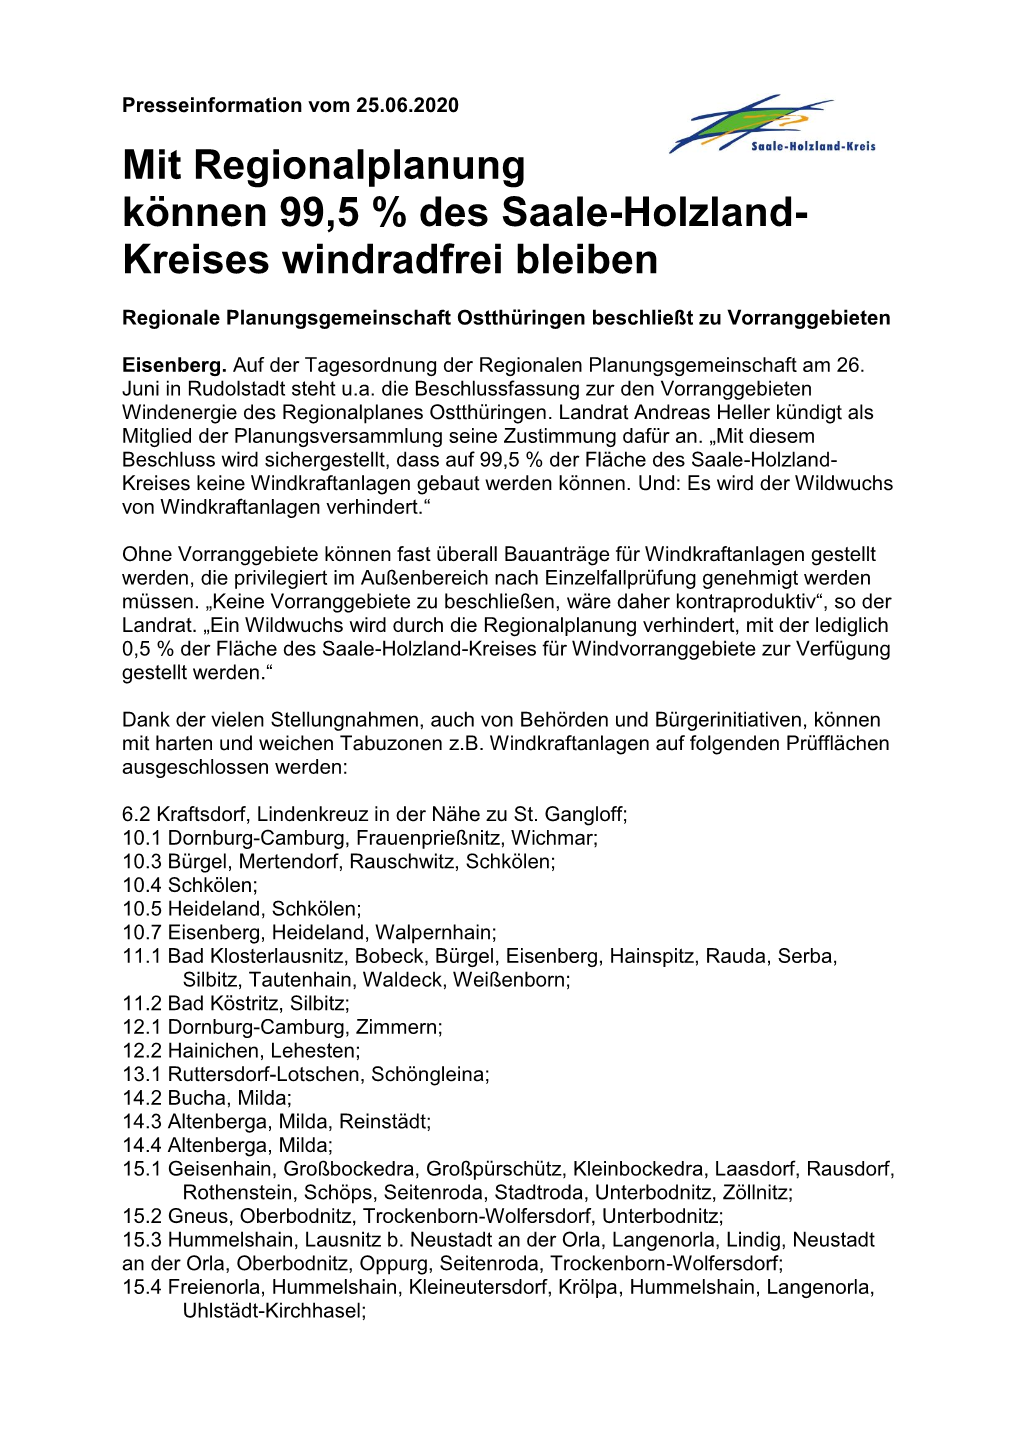 Mit Regionalplanung Können 99,5 % Des Saale-Holzland- Kreises Windradfrei Bleiben